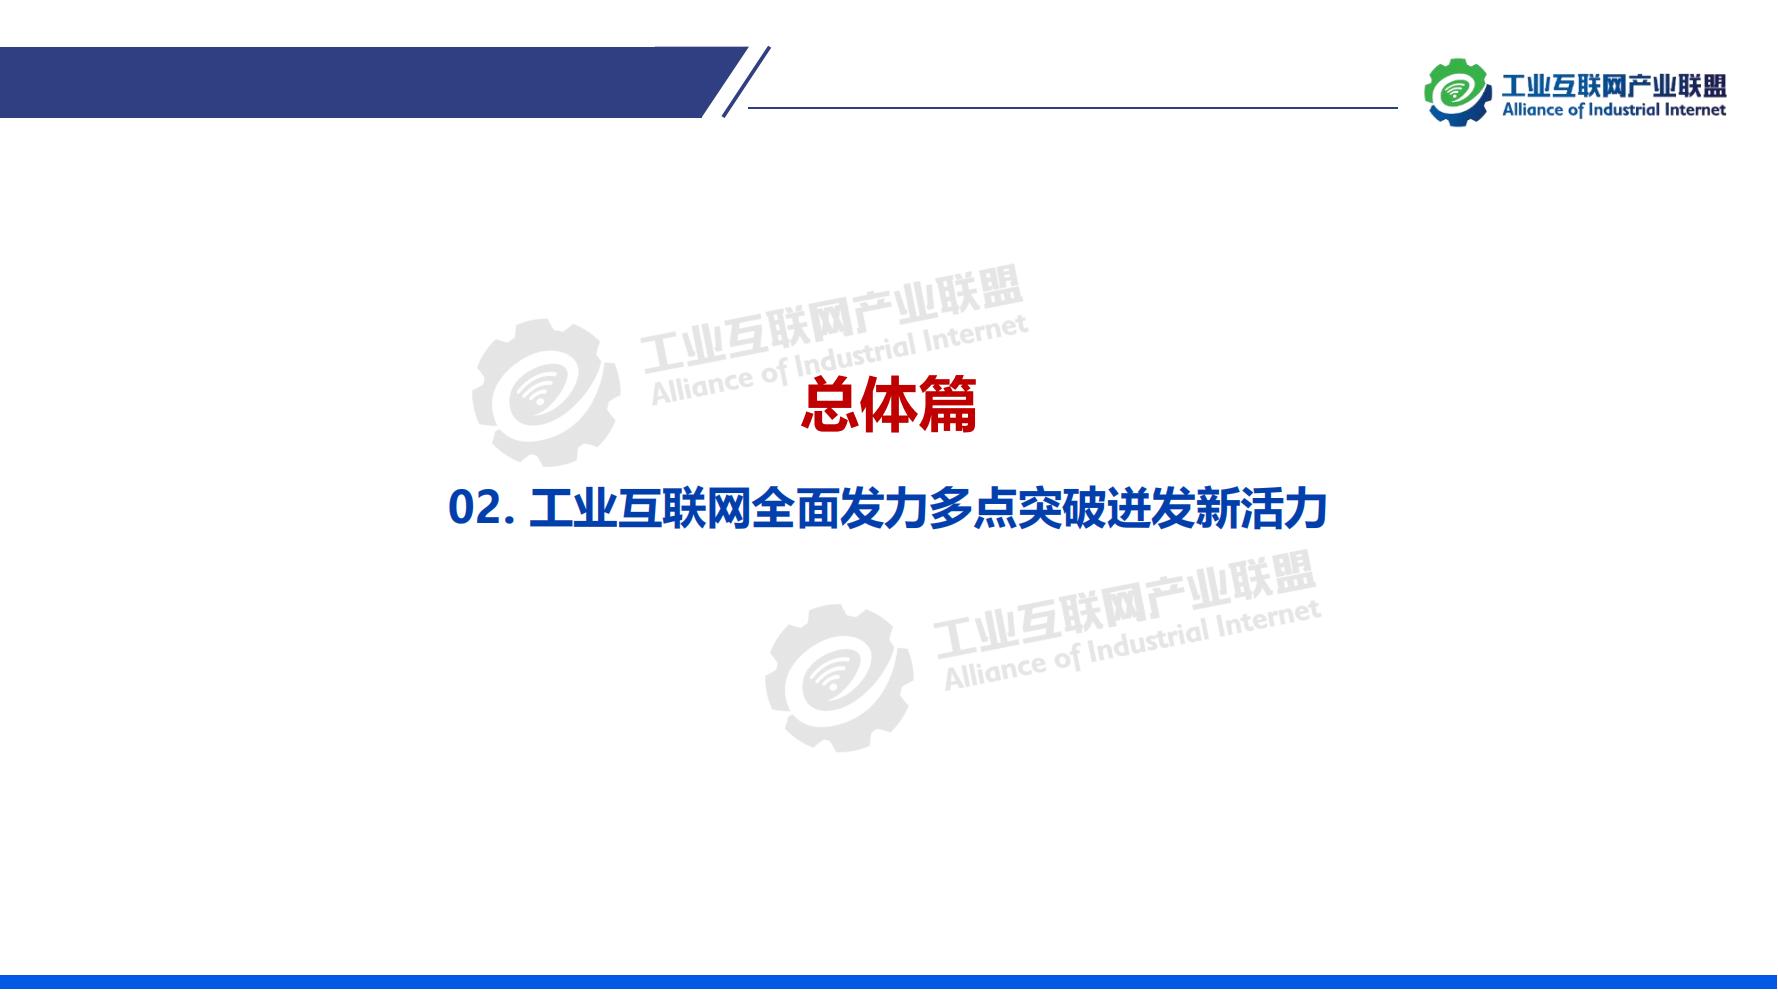 1-中国工业互联网发展成效评估报告-水印_11.jpg